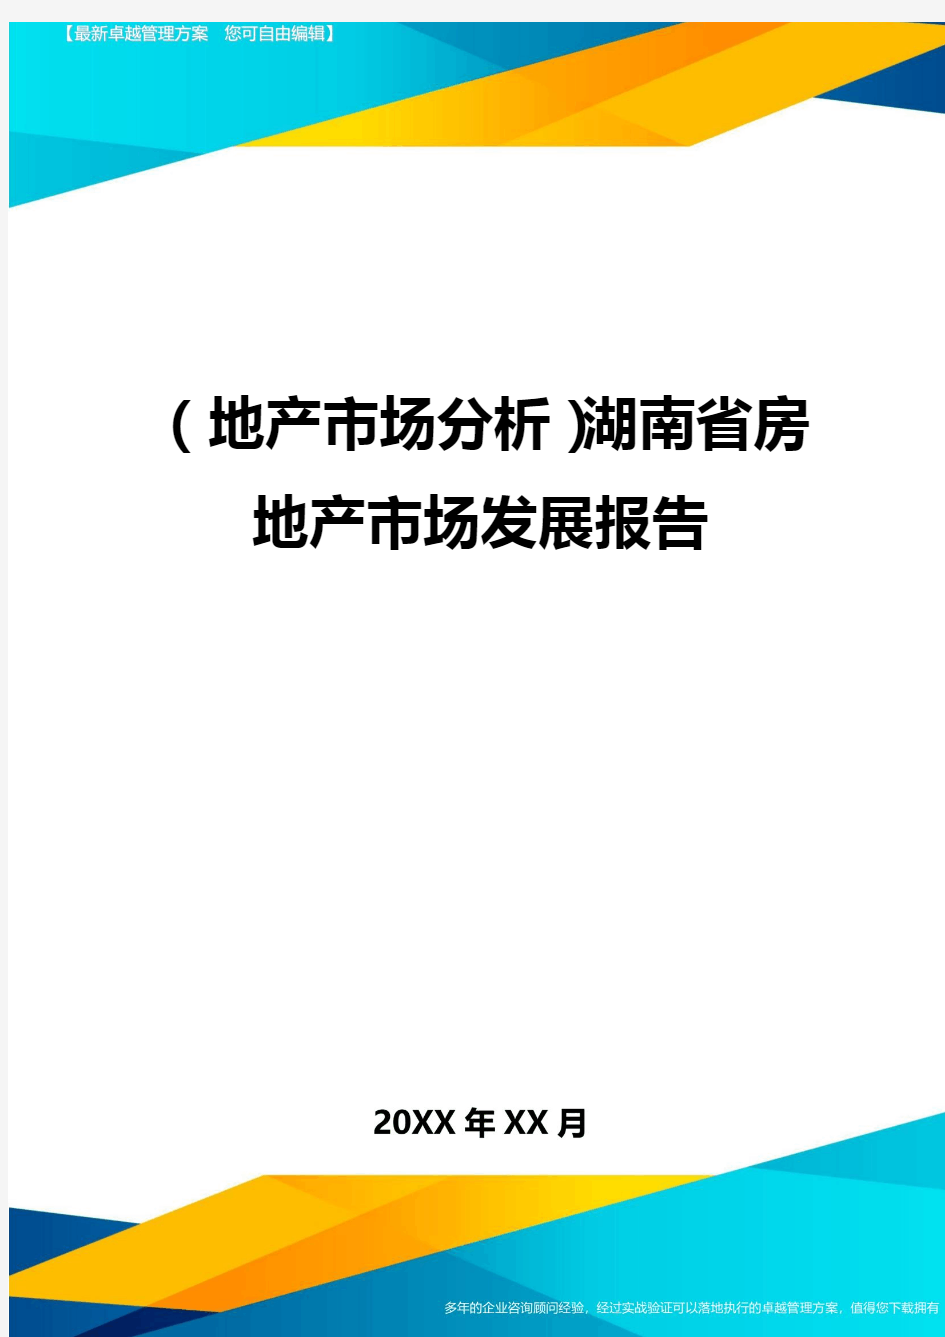 (地产市场分析)湖南省房地产市场发展报告